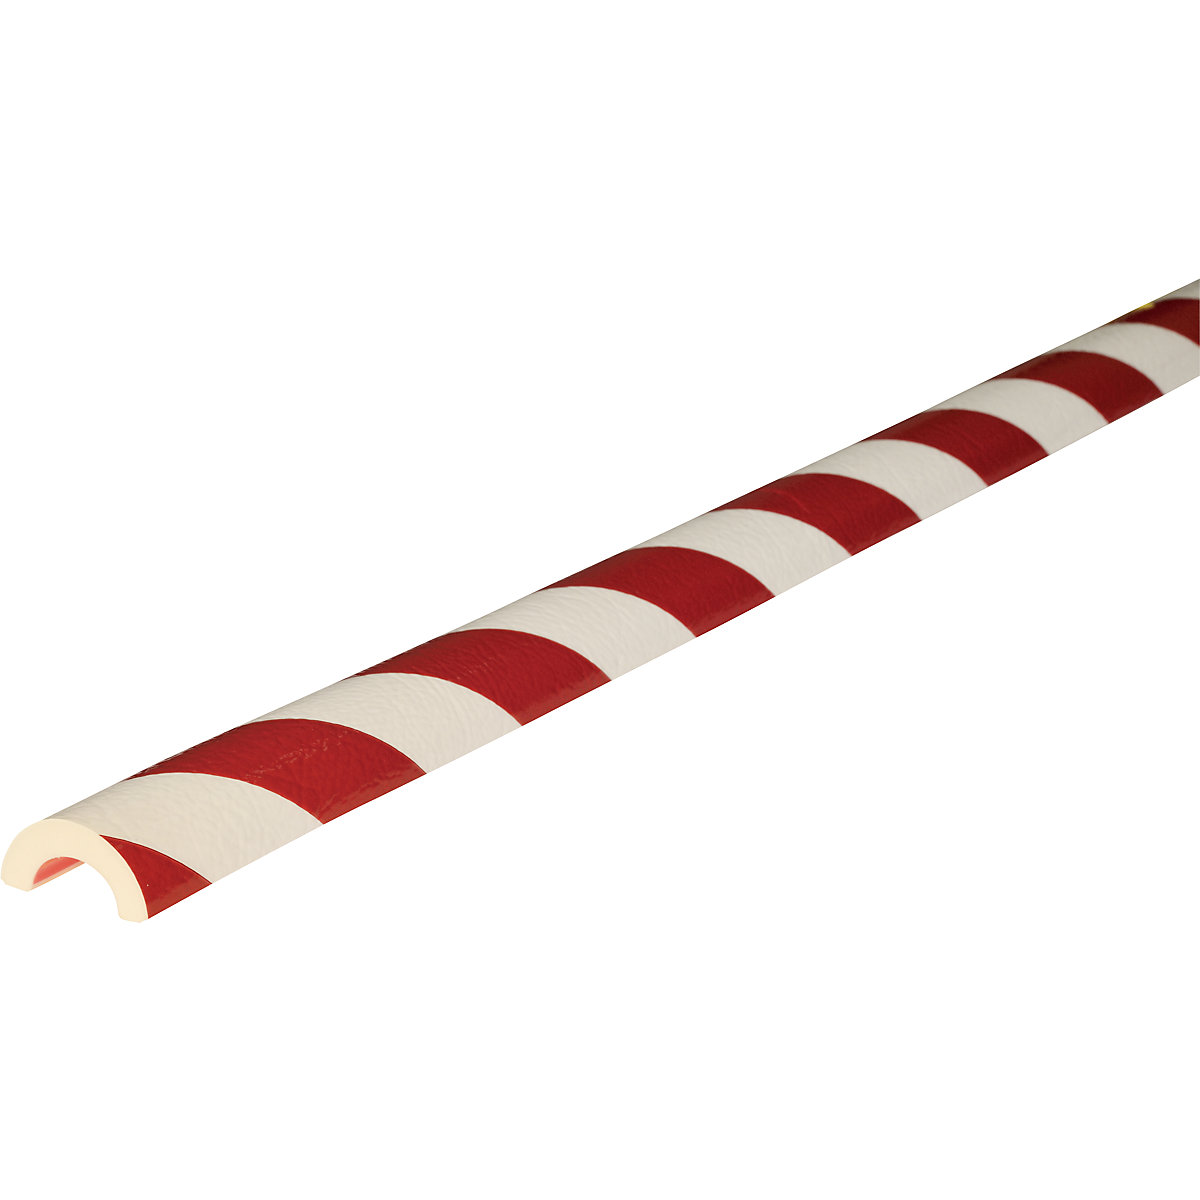 Proteção de tubos Knuffi® – SHG, tipo R30, corte individual, por metro corrente, vermelho/branco-9